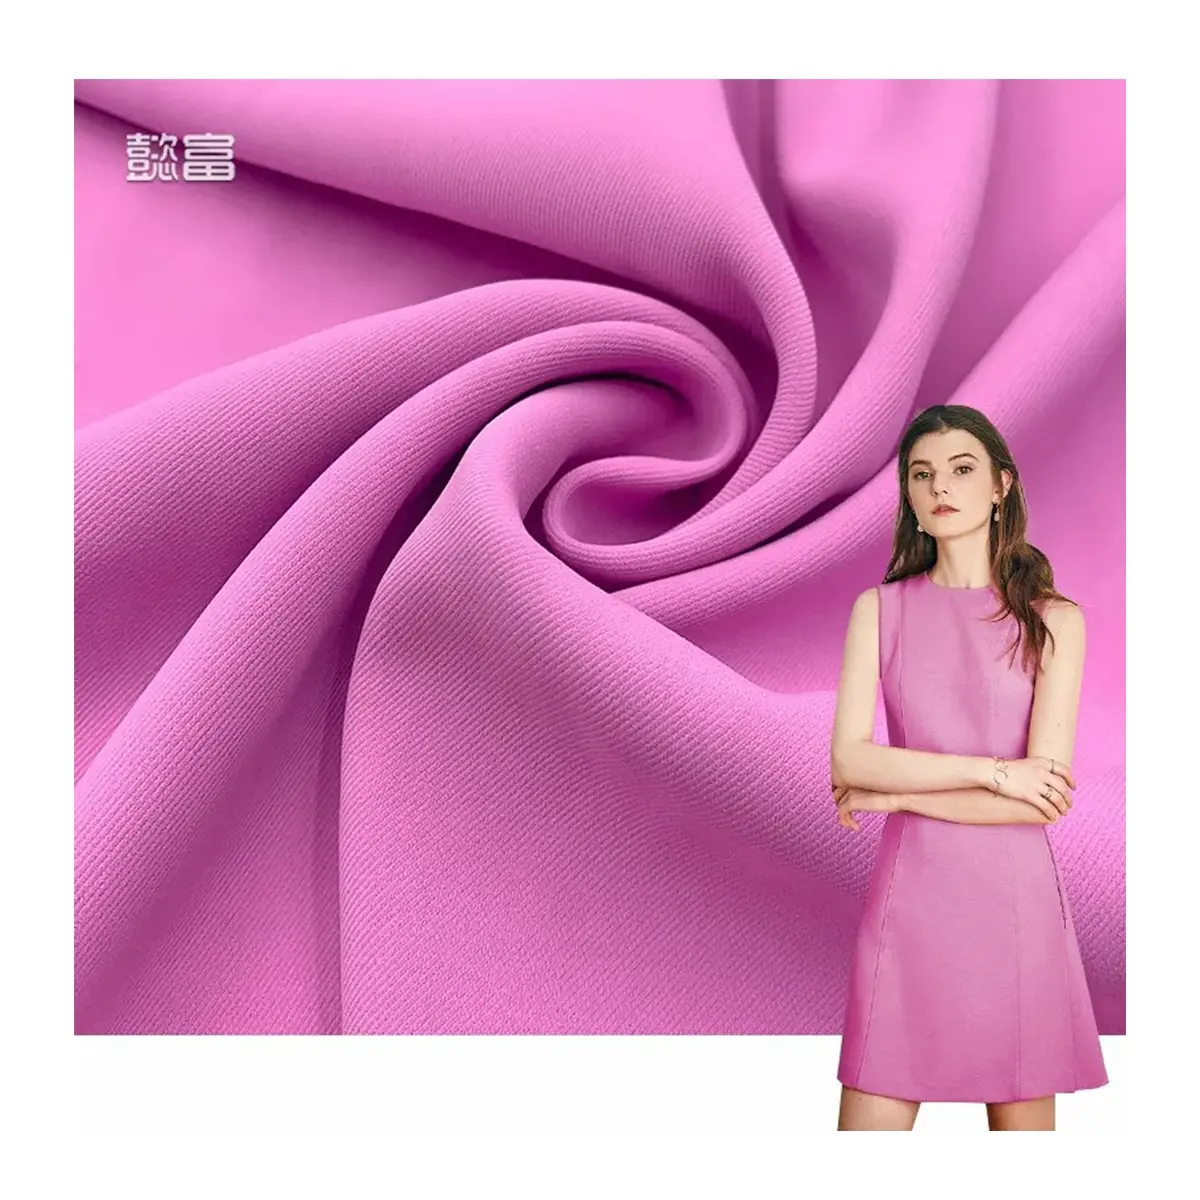 Giyim tekstil tedarikçisi imalat toptan elbise özel kadın dimi Polyester Spandex viskon/Polyester kumaş